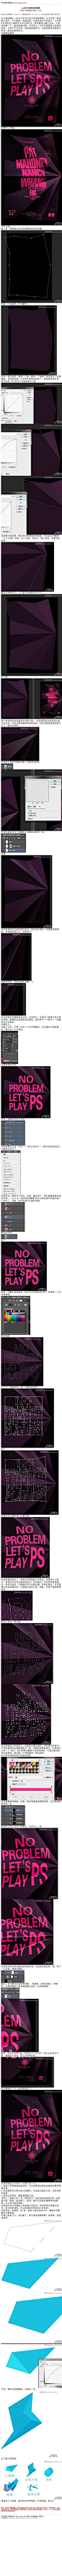 #海报贺卡#《photoshop设计创意折痕海报》 这个海报属于一张以文字为主的文字排版海报。让文字在一张折纸上显示。不乏趣味，刺激阅读，也是简洁大气的设计。 教程网址：http://www.16xx8.com/photoshop/jiaocheng/2014/134086.html